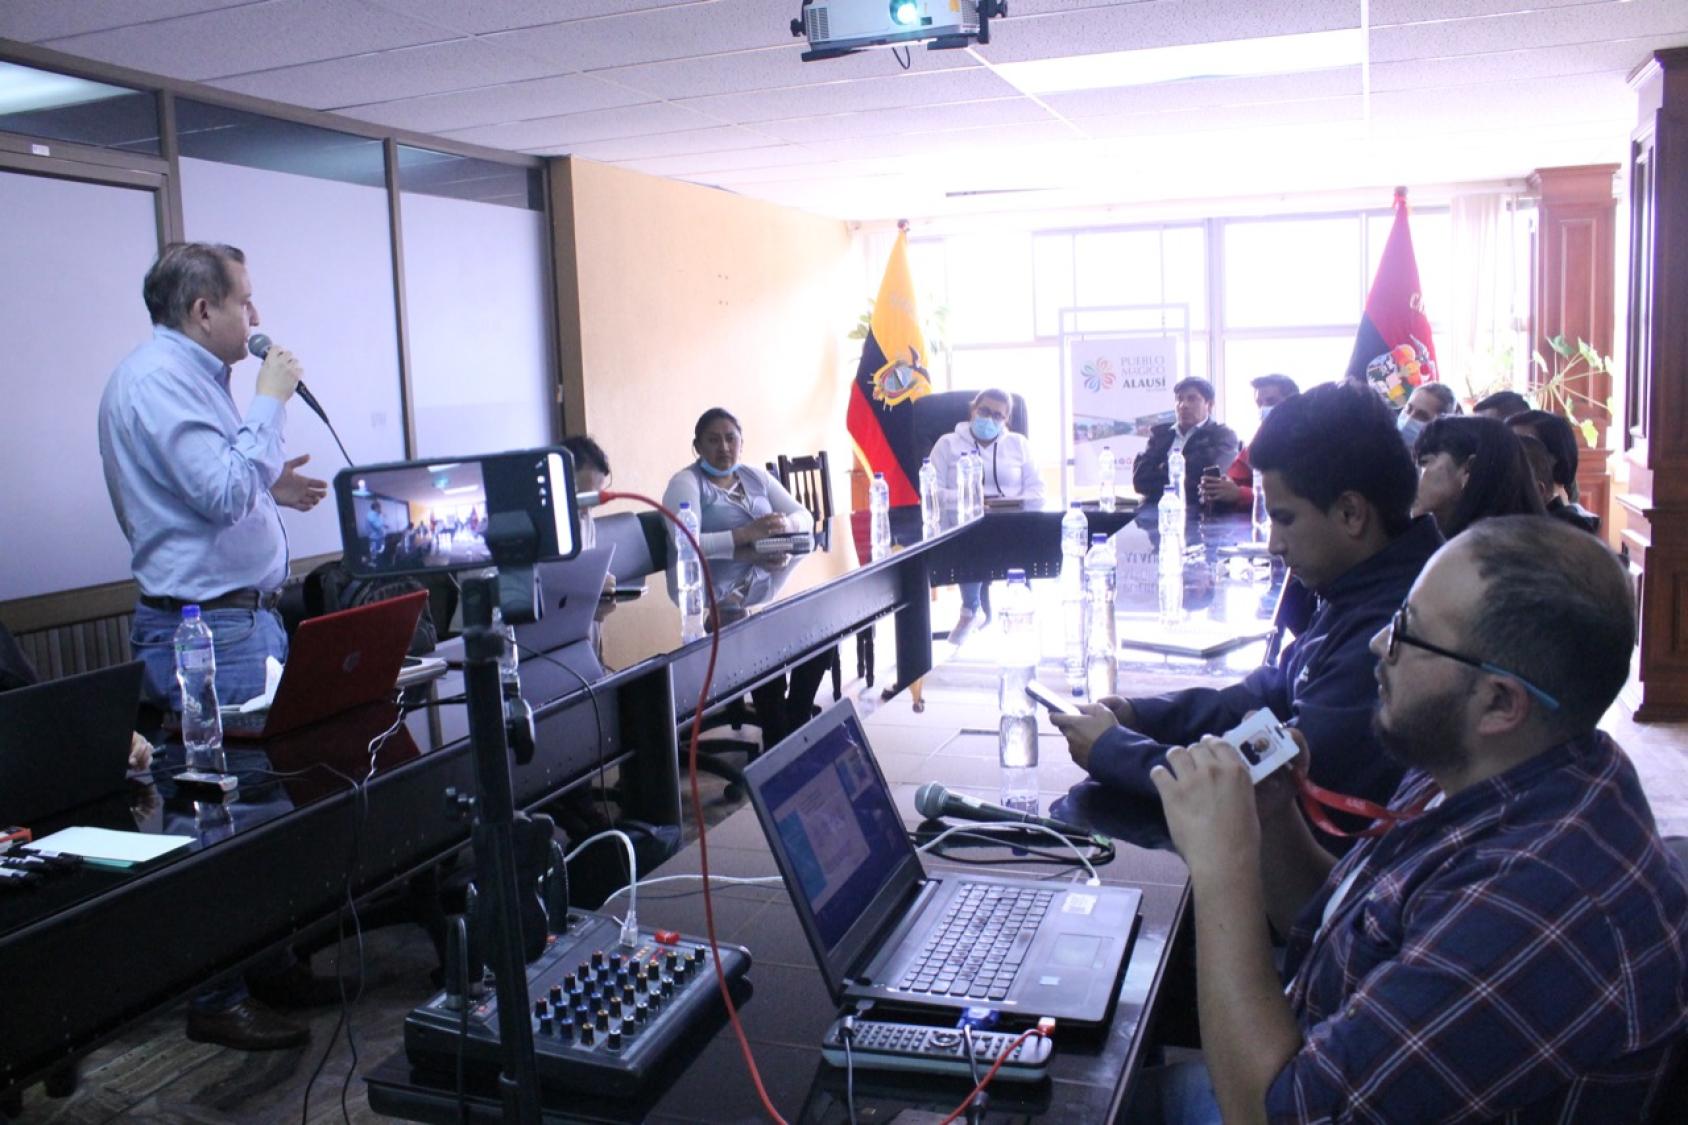 Un grupo de consultores reunidos en una sala con la bandera de Ecuador en el fondo.